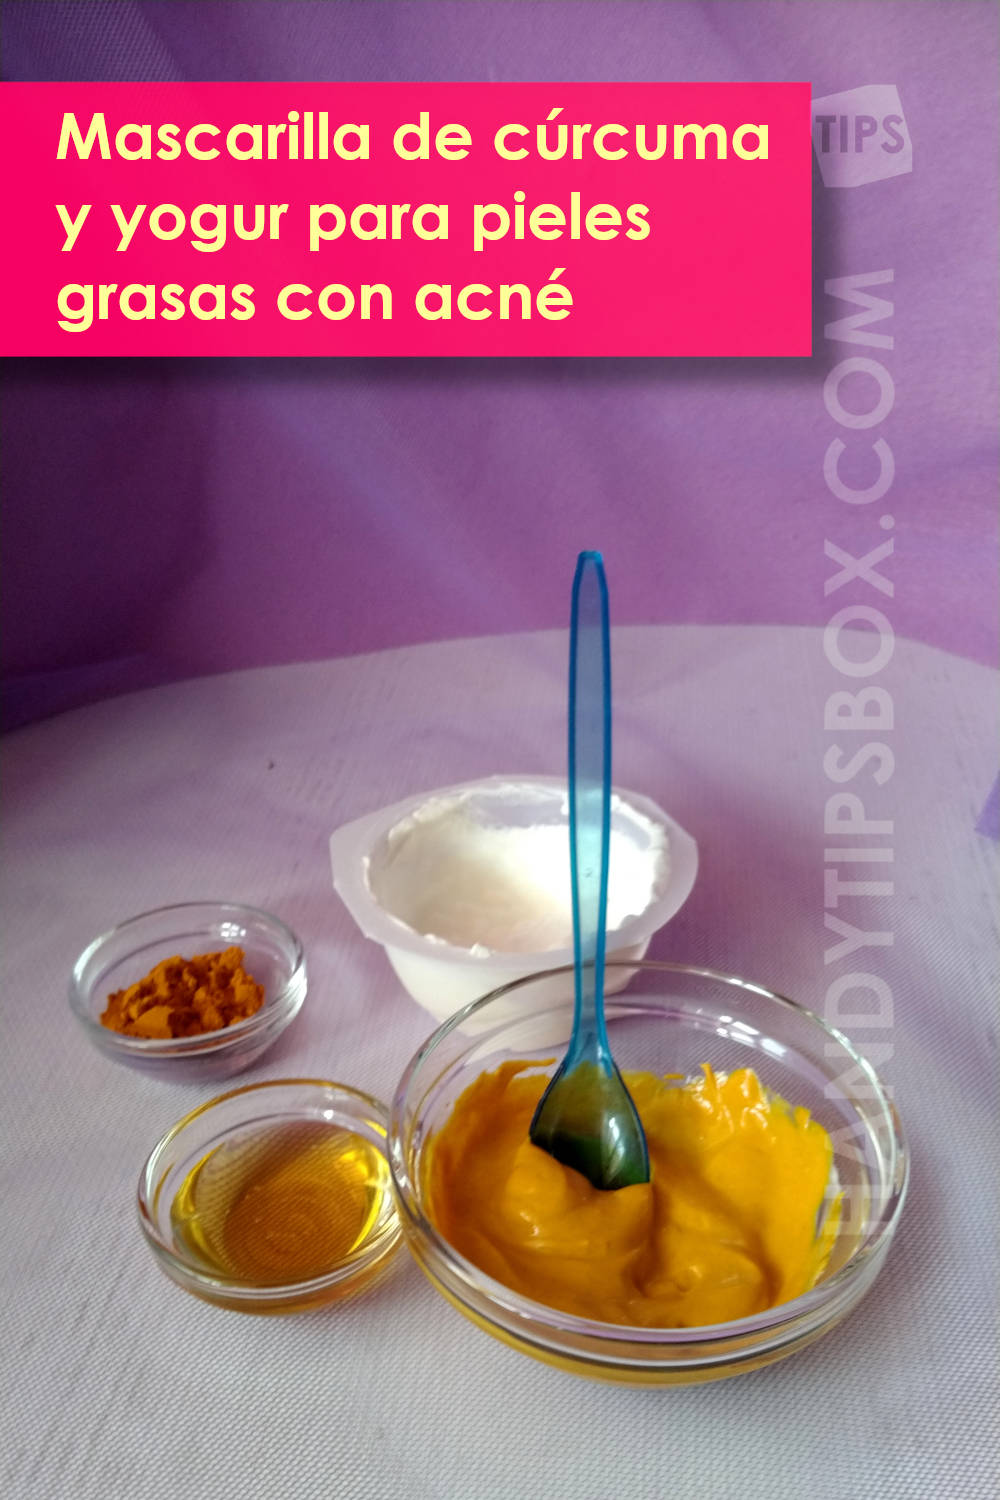 Mascarilla cosmética de cúrcuma y yogur. Ingredientes y mascarilla lista para usar. Imagen vertical.